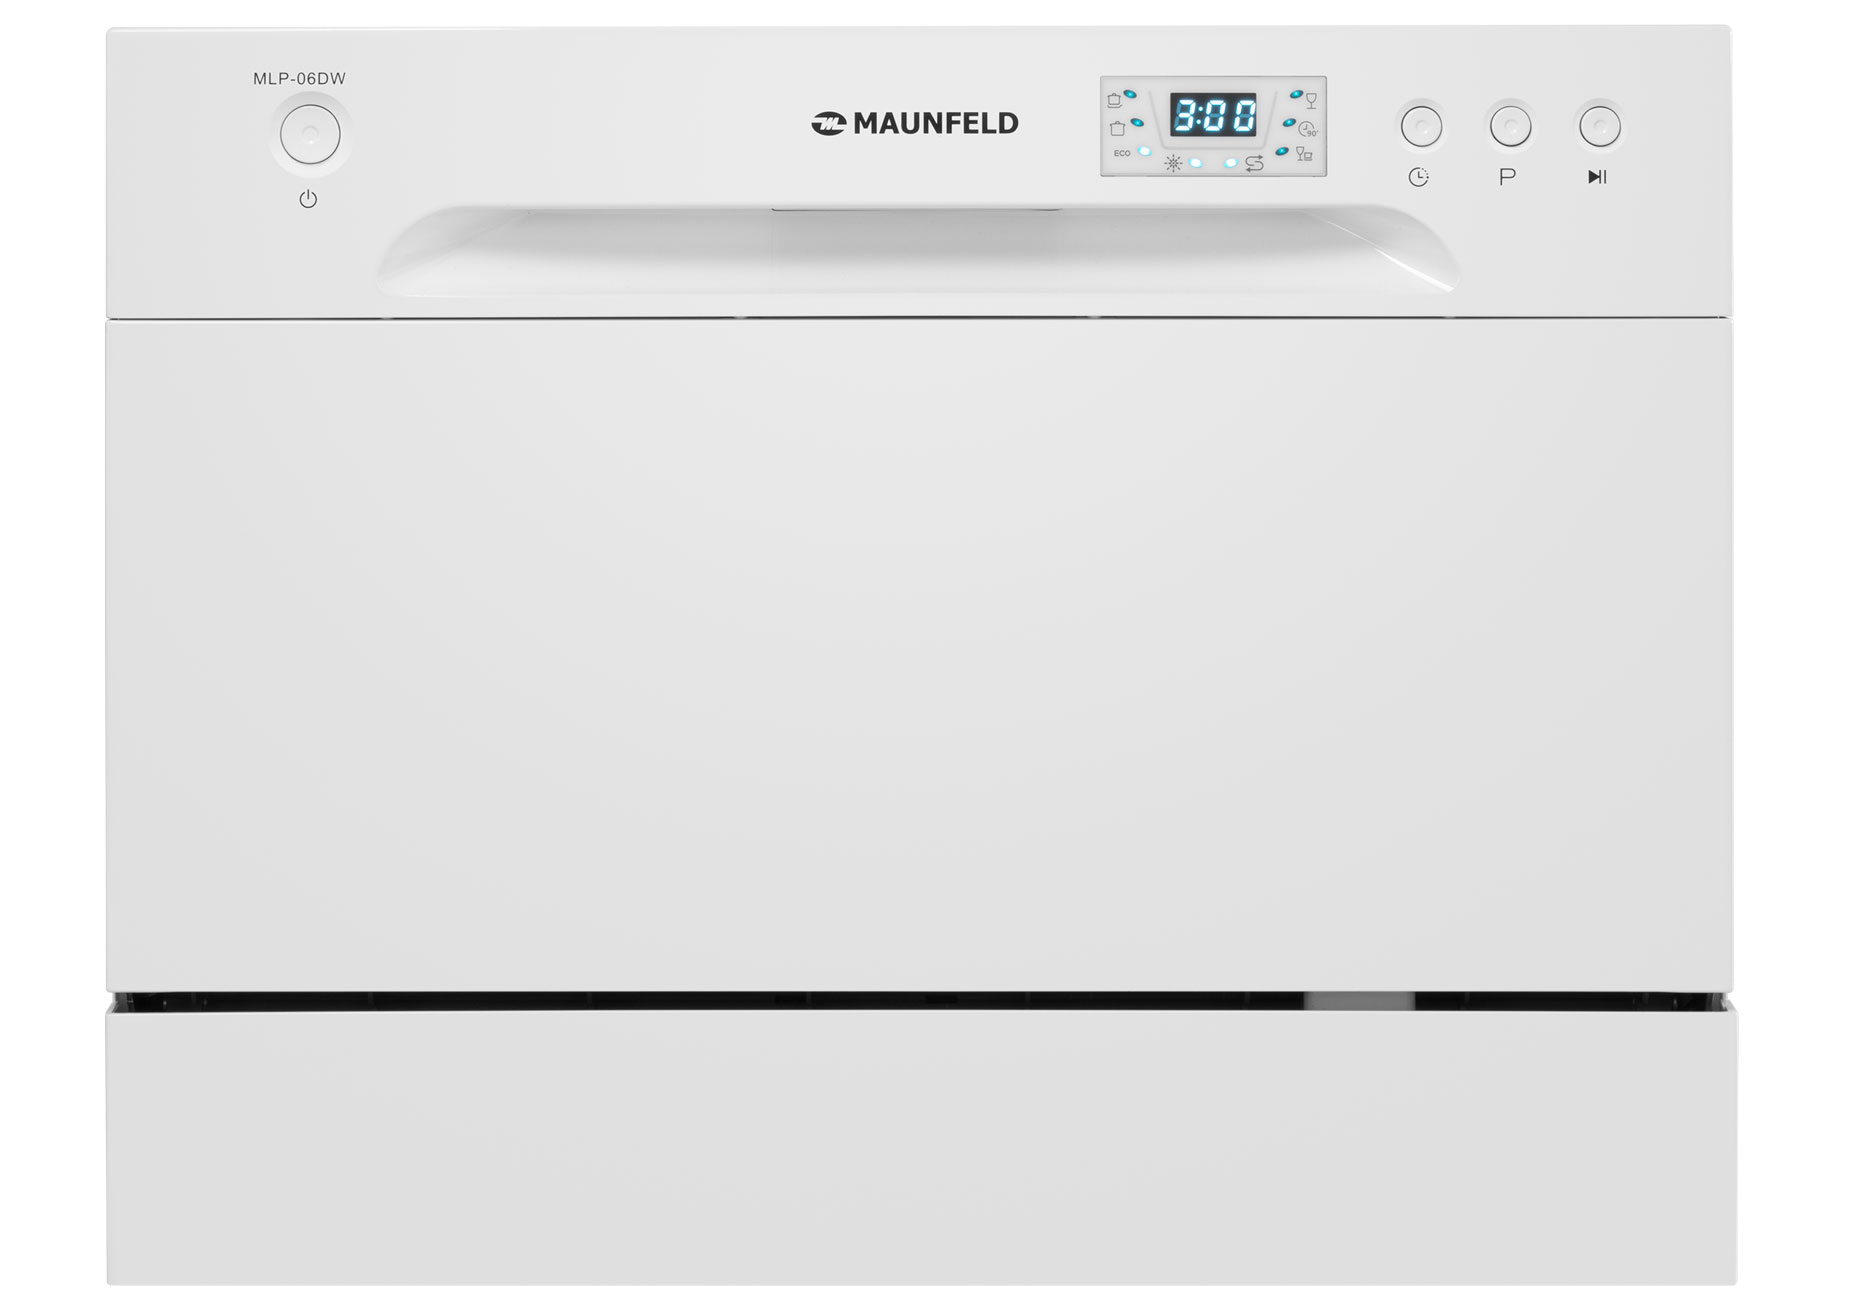 Посудомоечная машина MAUNFELD MLP-06DW белый встраиваемая посудомоечная машина hotpoint his 2d86 d 45 см 8 программ нержавеющая сталь